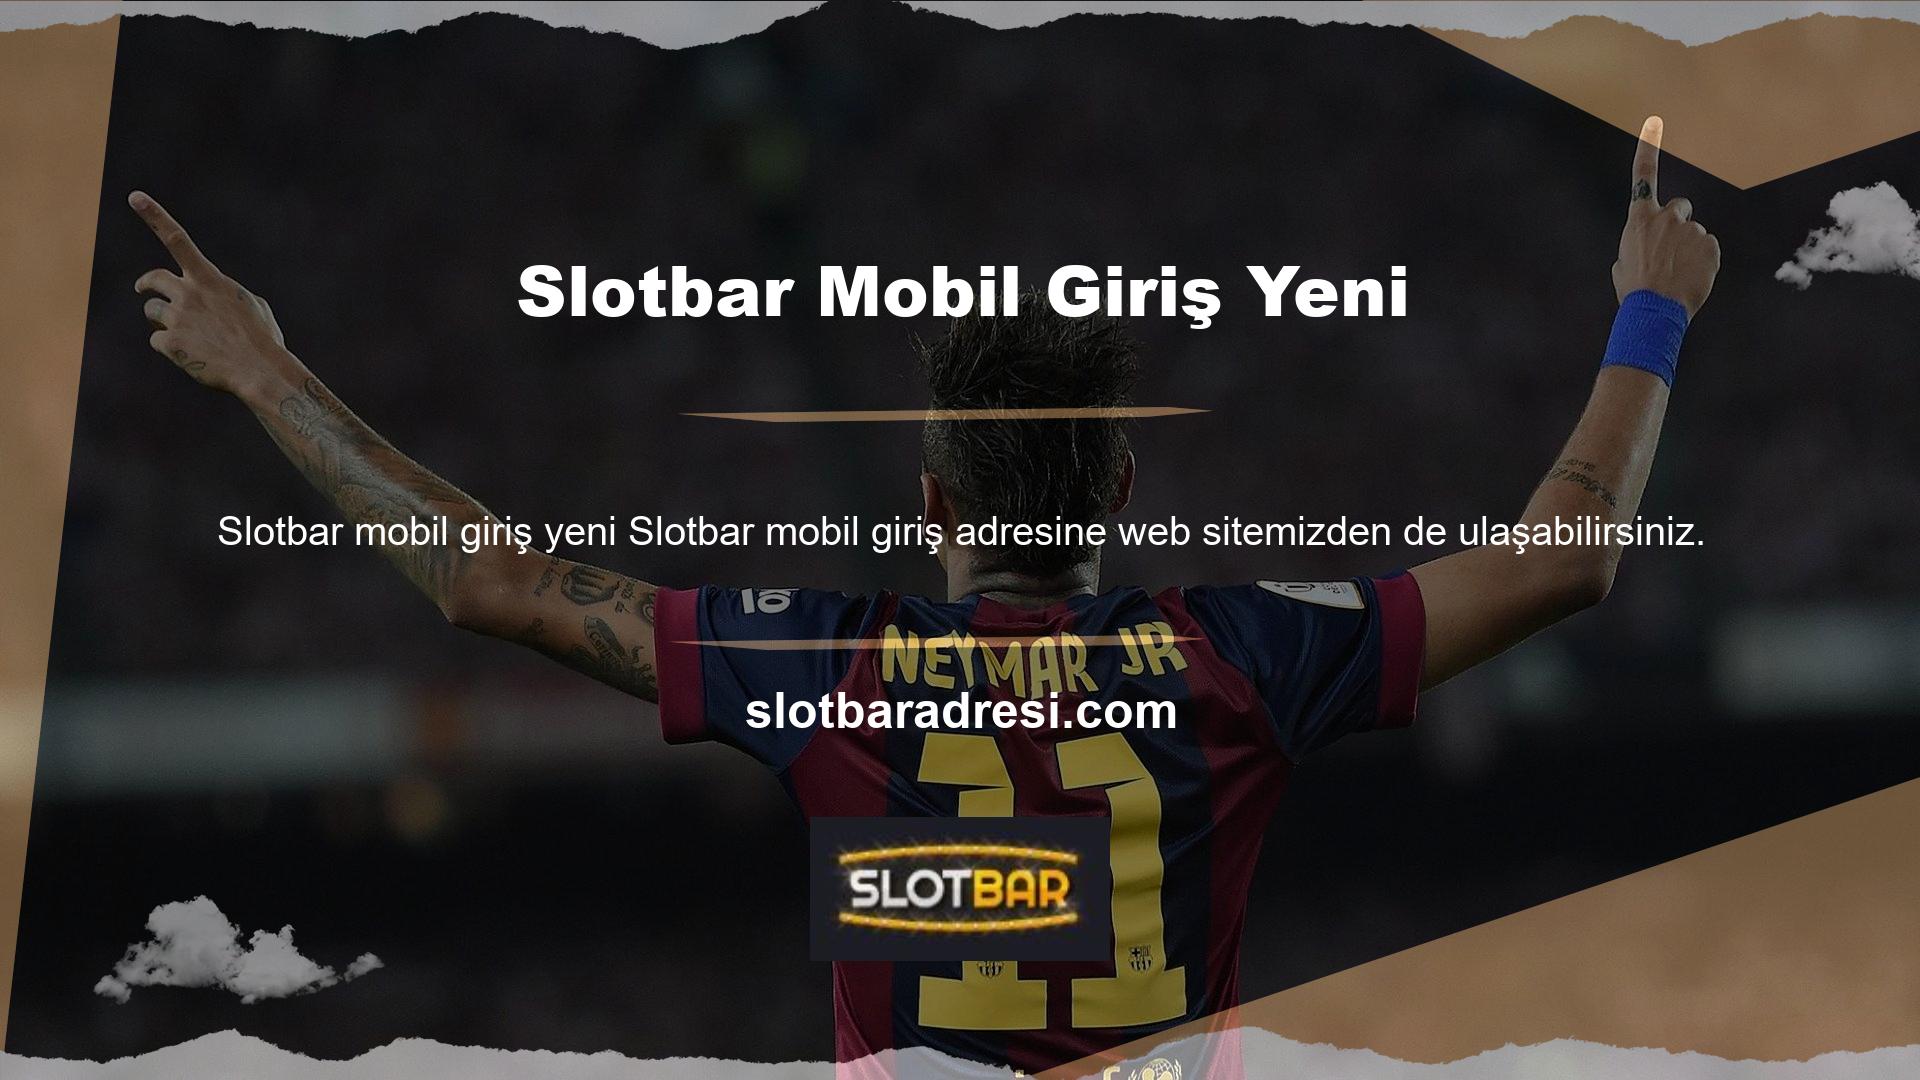 Telefonunuzda Slotbar TV uygulamasını açıp maçı canlı izlemek isterseniz Android veya IOS cihazınızdan yapabilirsiniz